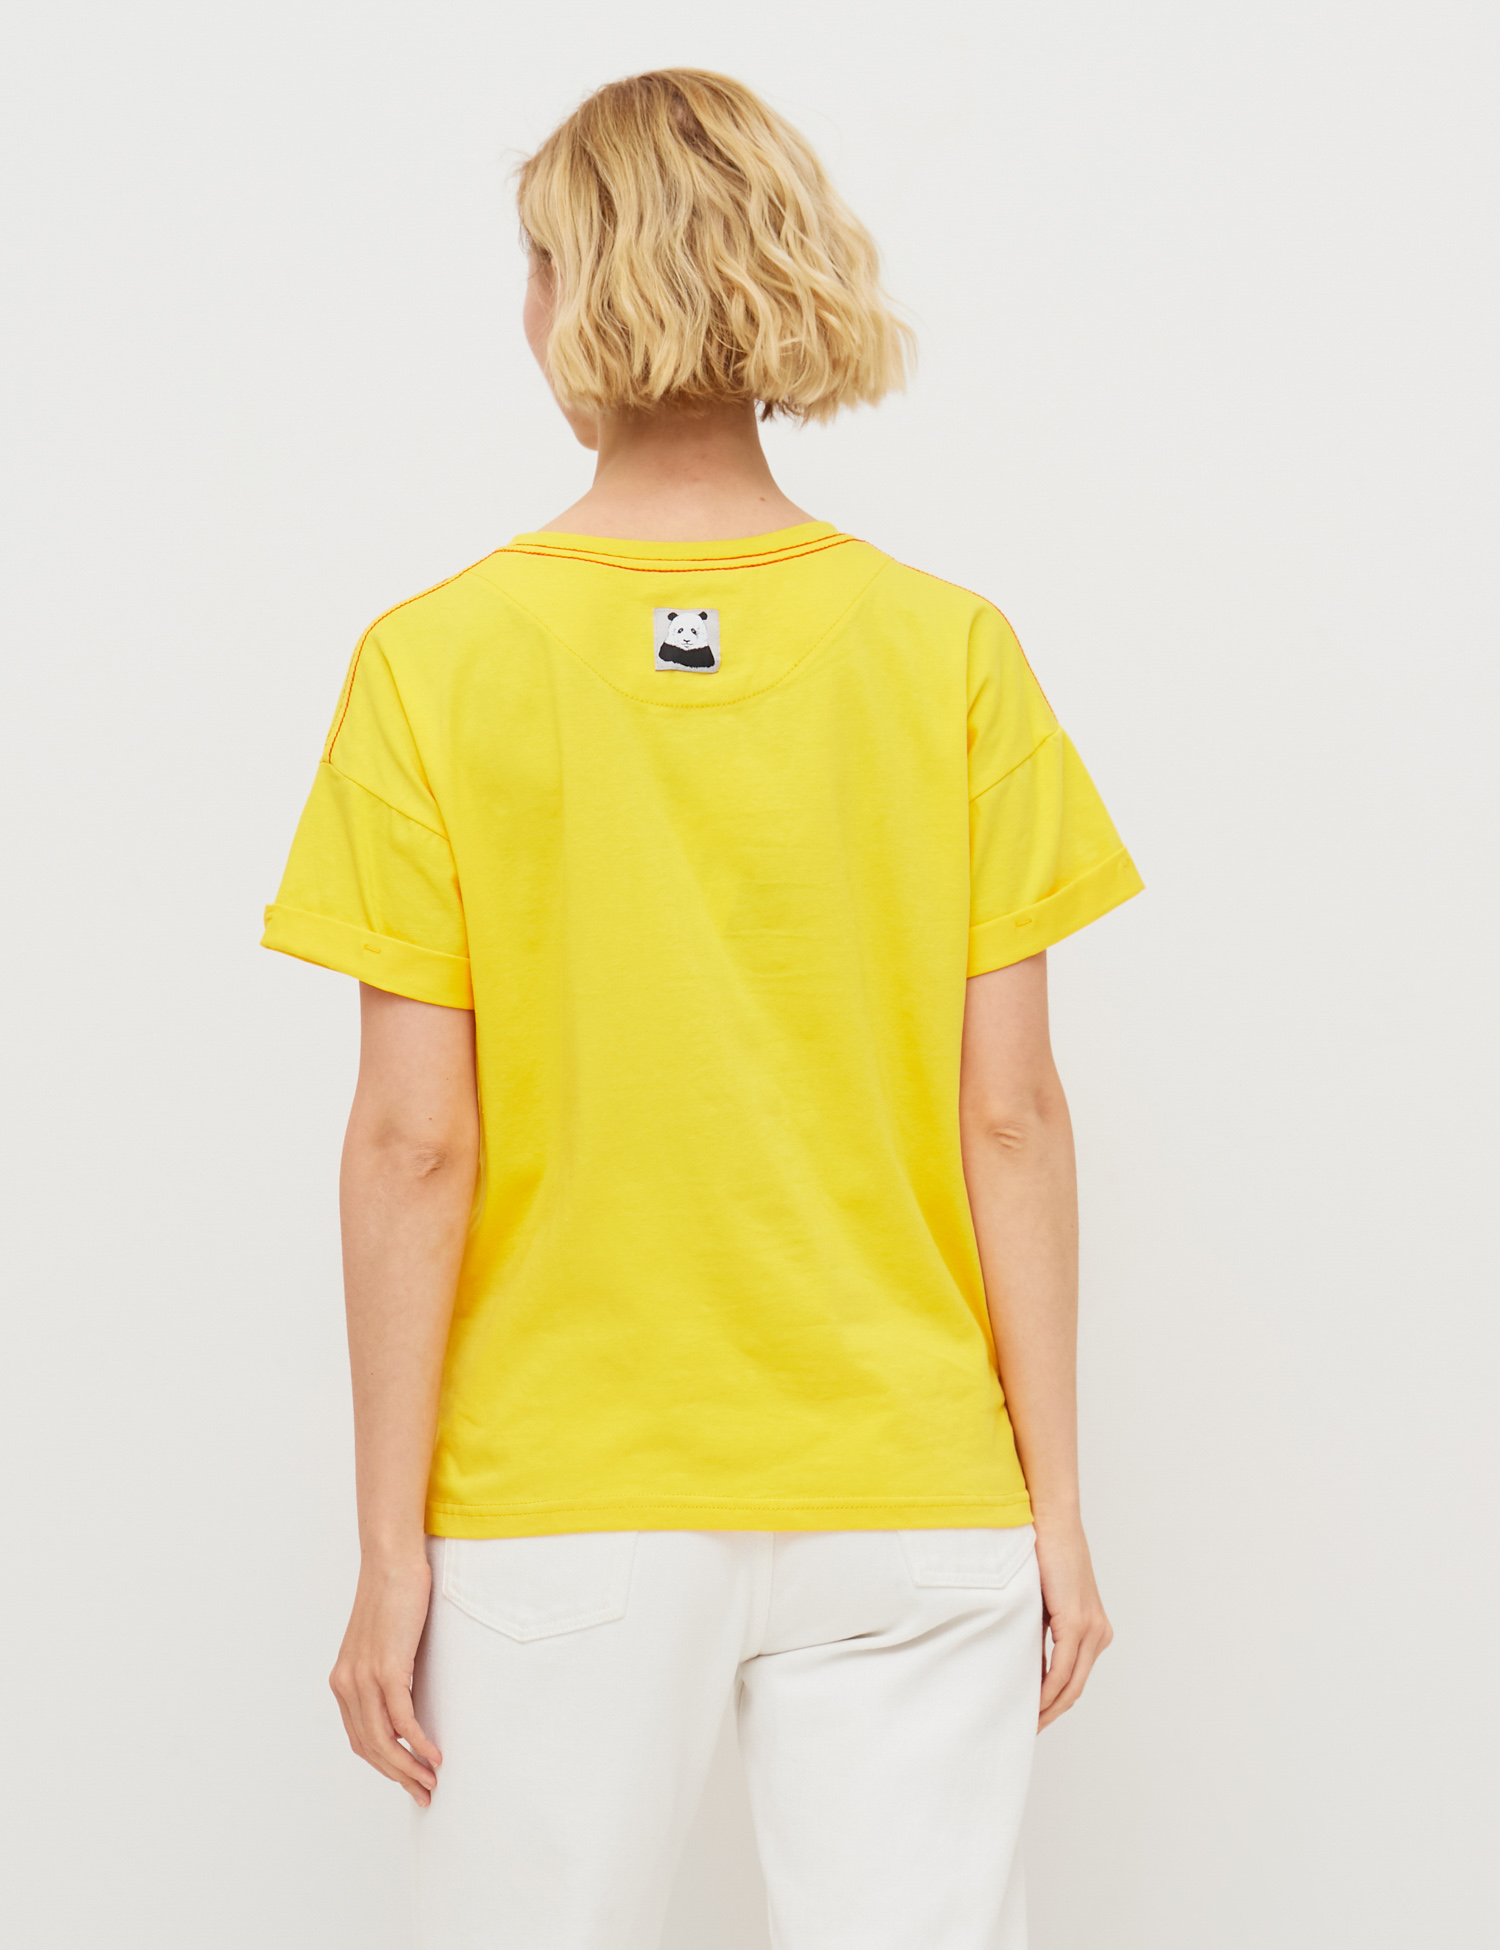 Картинка Жіноча жовта футболка з авторським малюнком